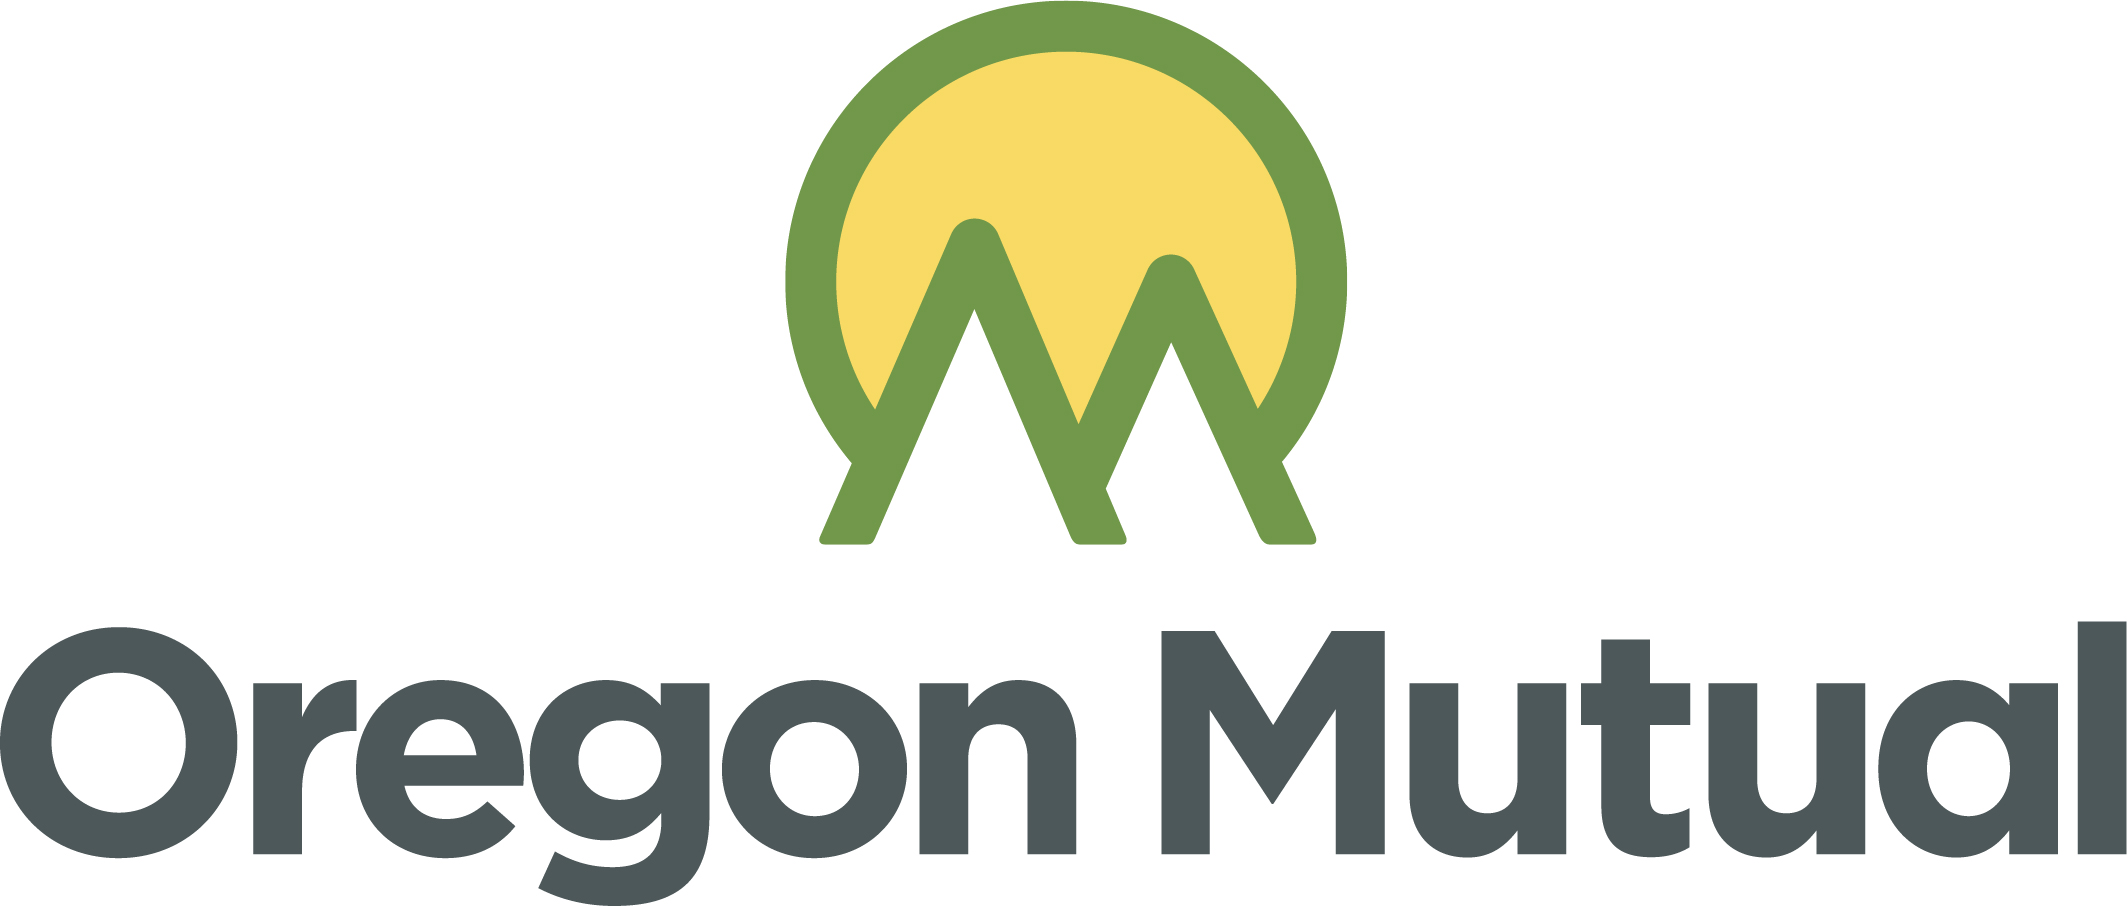 Oregon_Mutual_logo_full_color.jpg